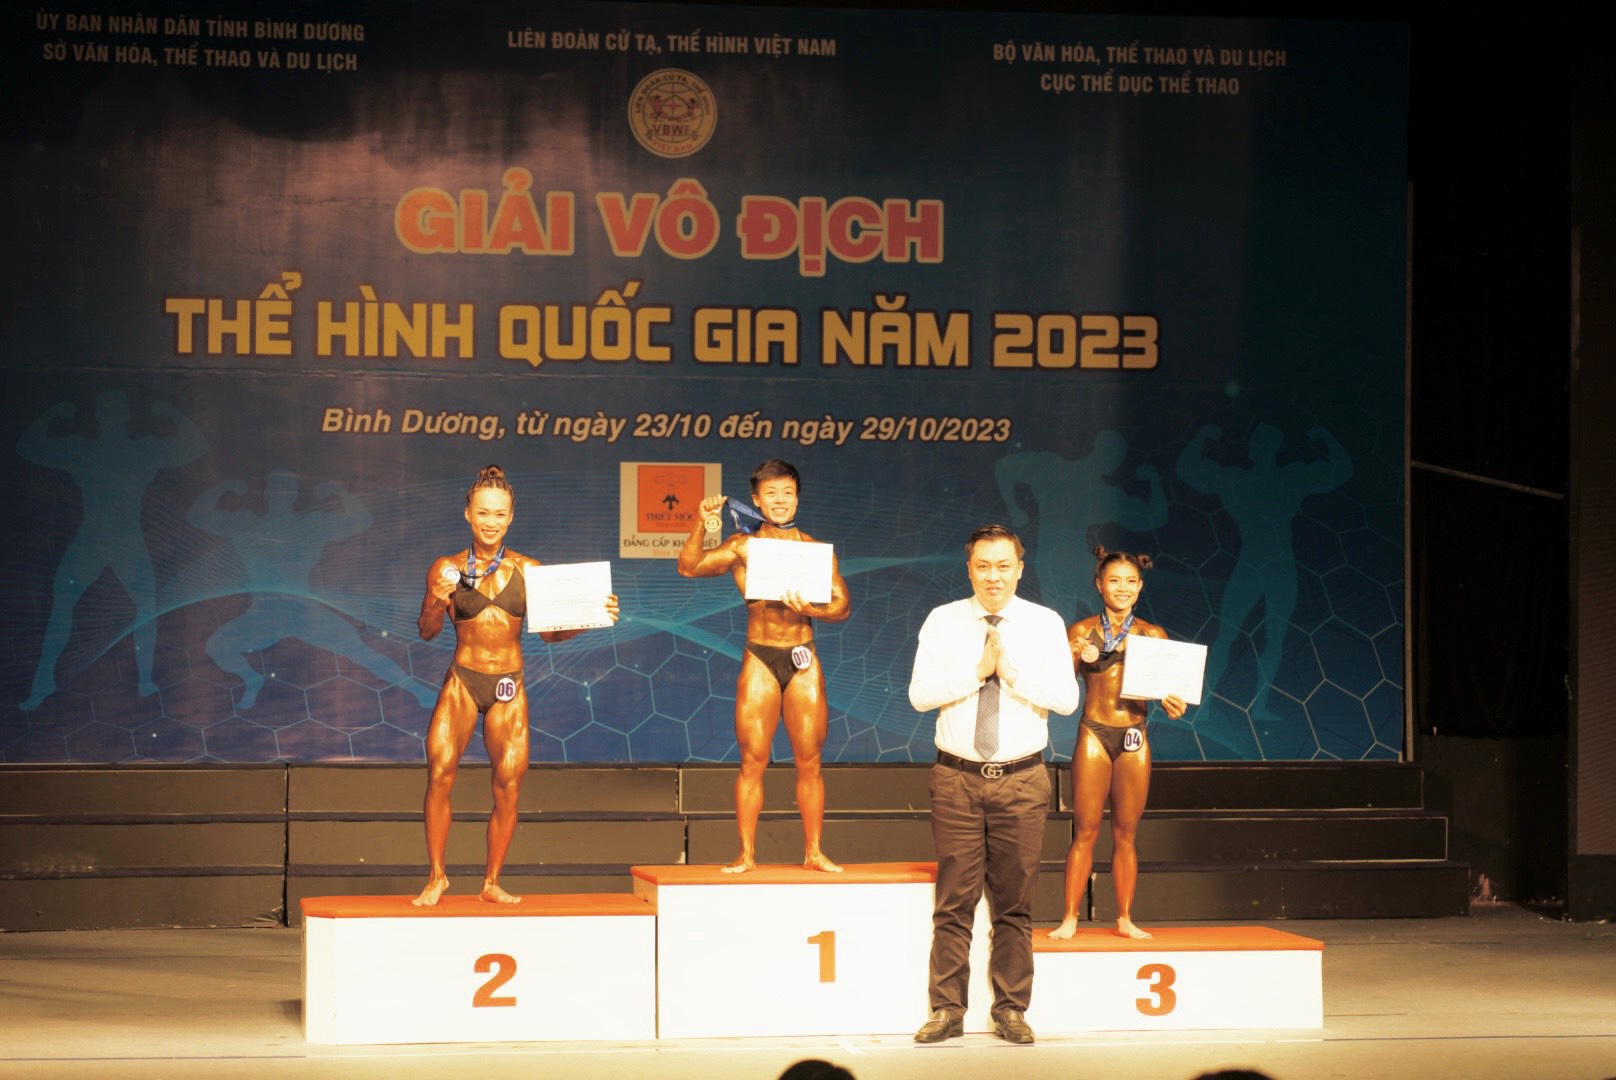 Ông Cao Văn Chóng, Trưởng BTC giải trao huy chương cho các VĐV đạt thành tích ở nội dung thi đấu đầu tiên, trong đó HCV thuộc về VĐV Vũ Thụy Minh Thùy của Bình Dương ở hạng cân đến 46kg nữ